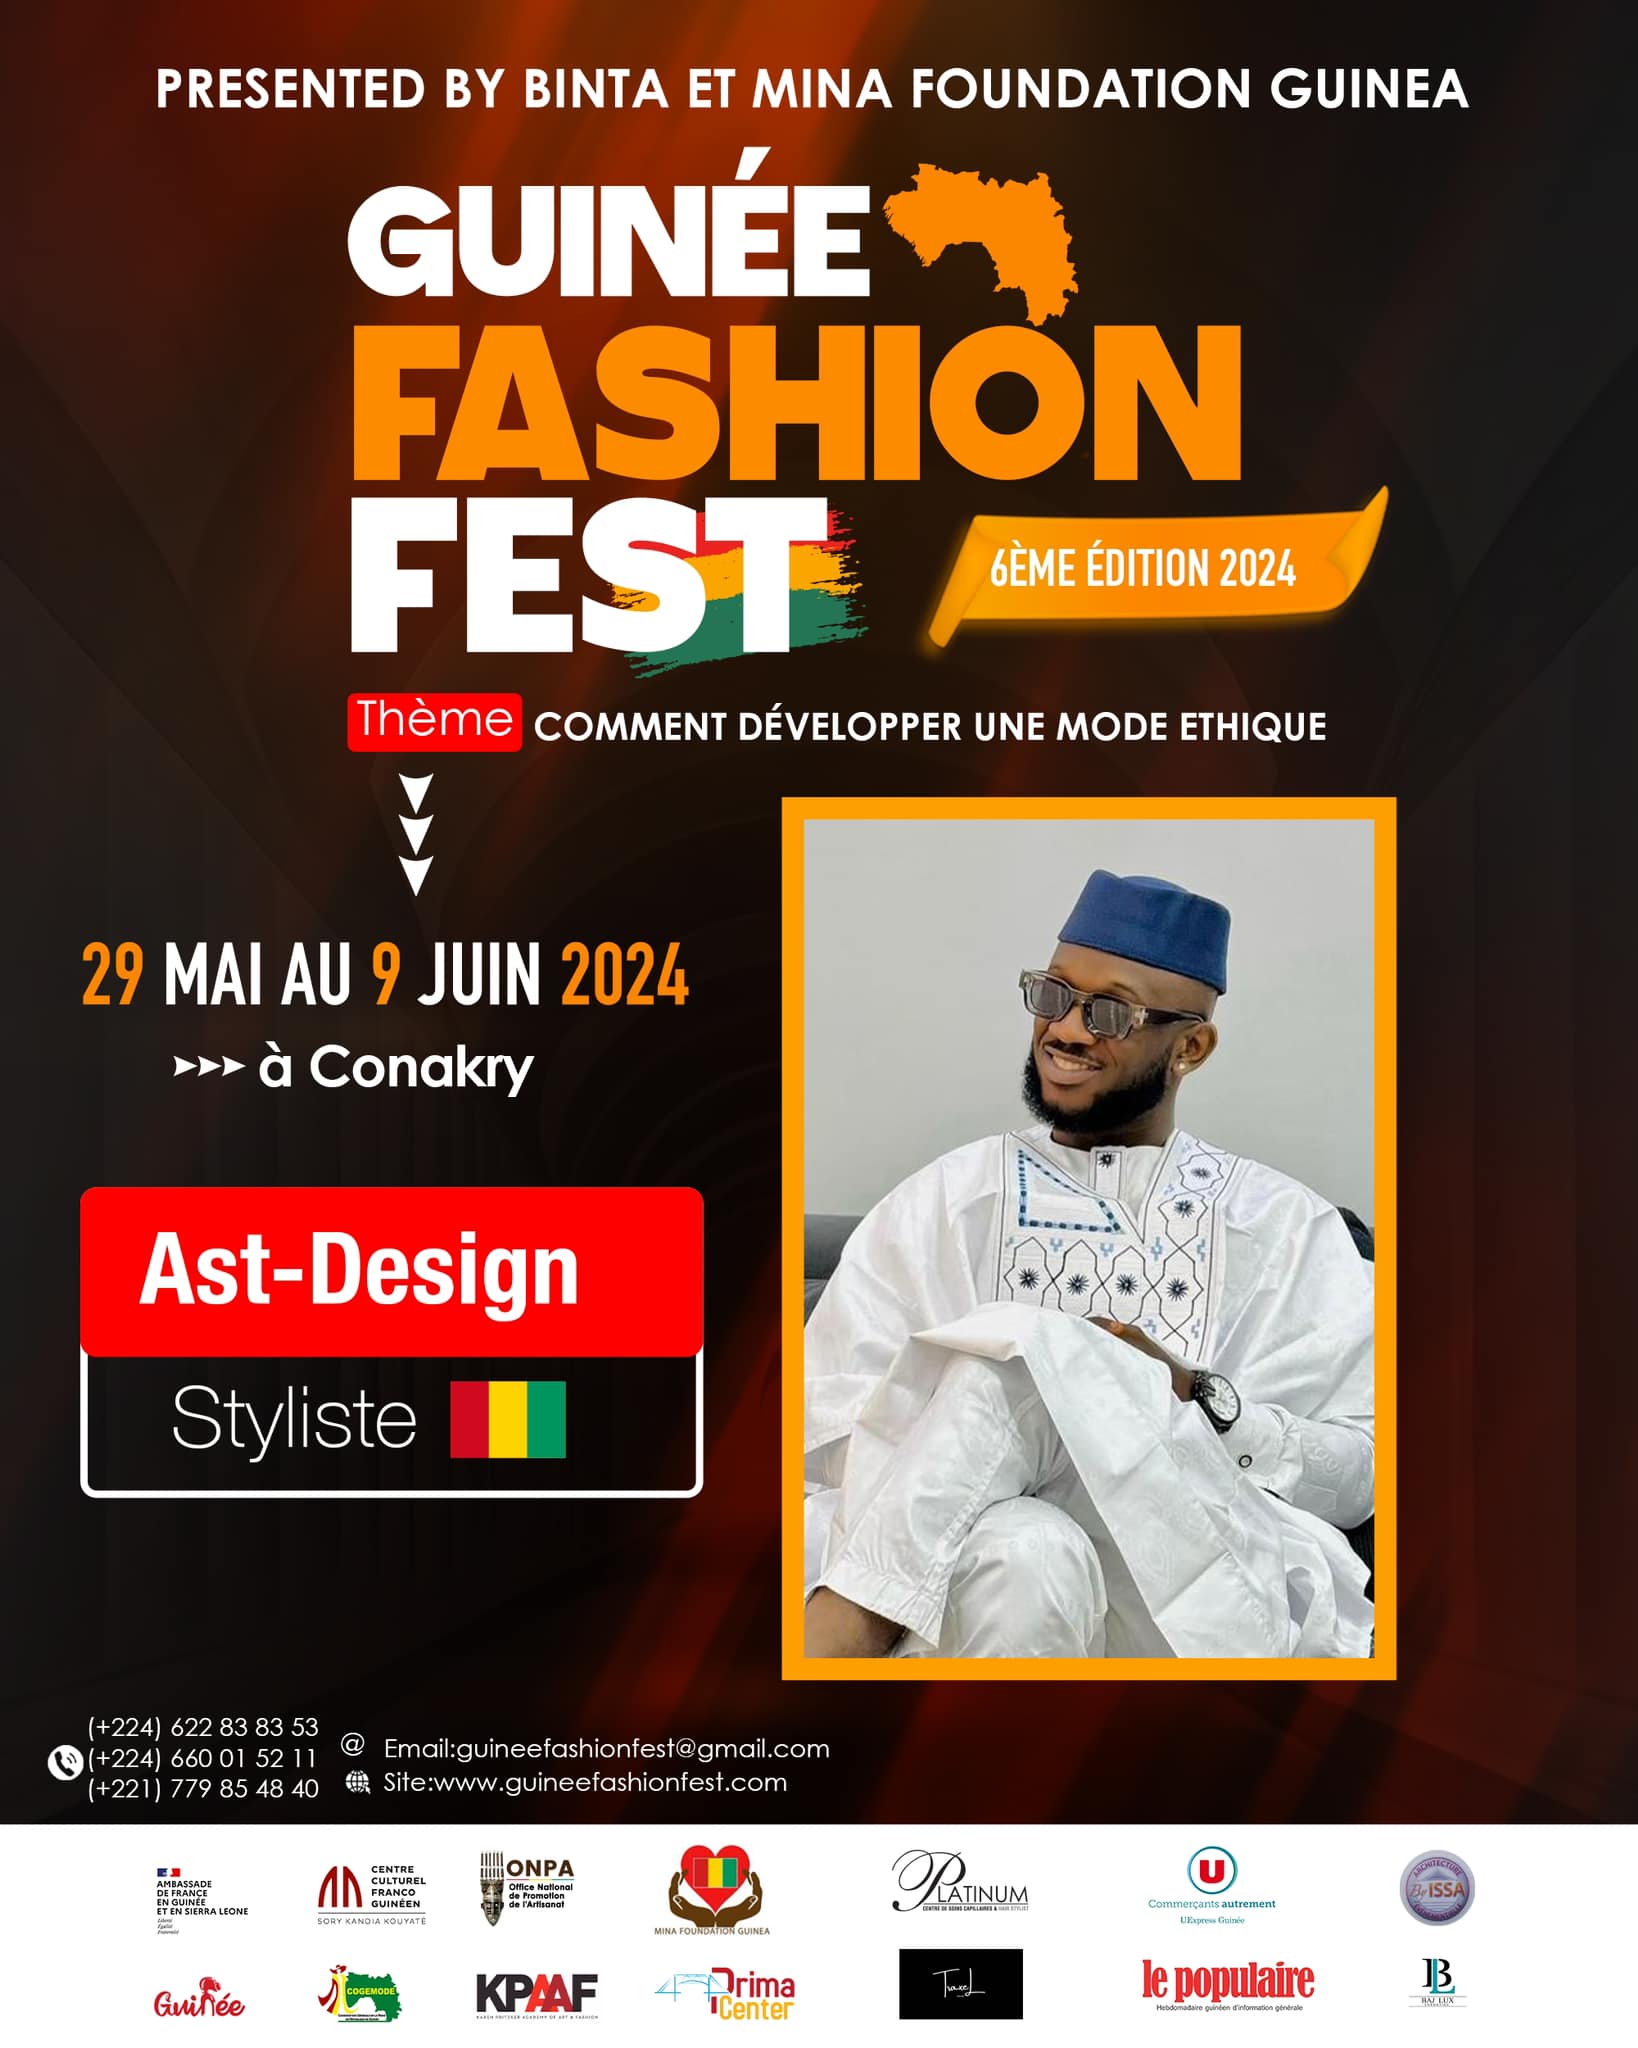 Guinée Fashion Fest presents Ast-Design by Ahmed Sékou Touré